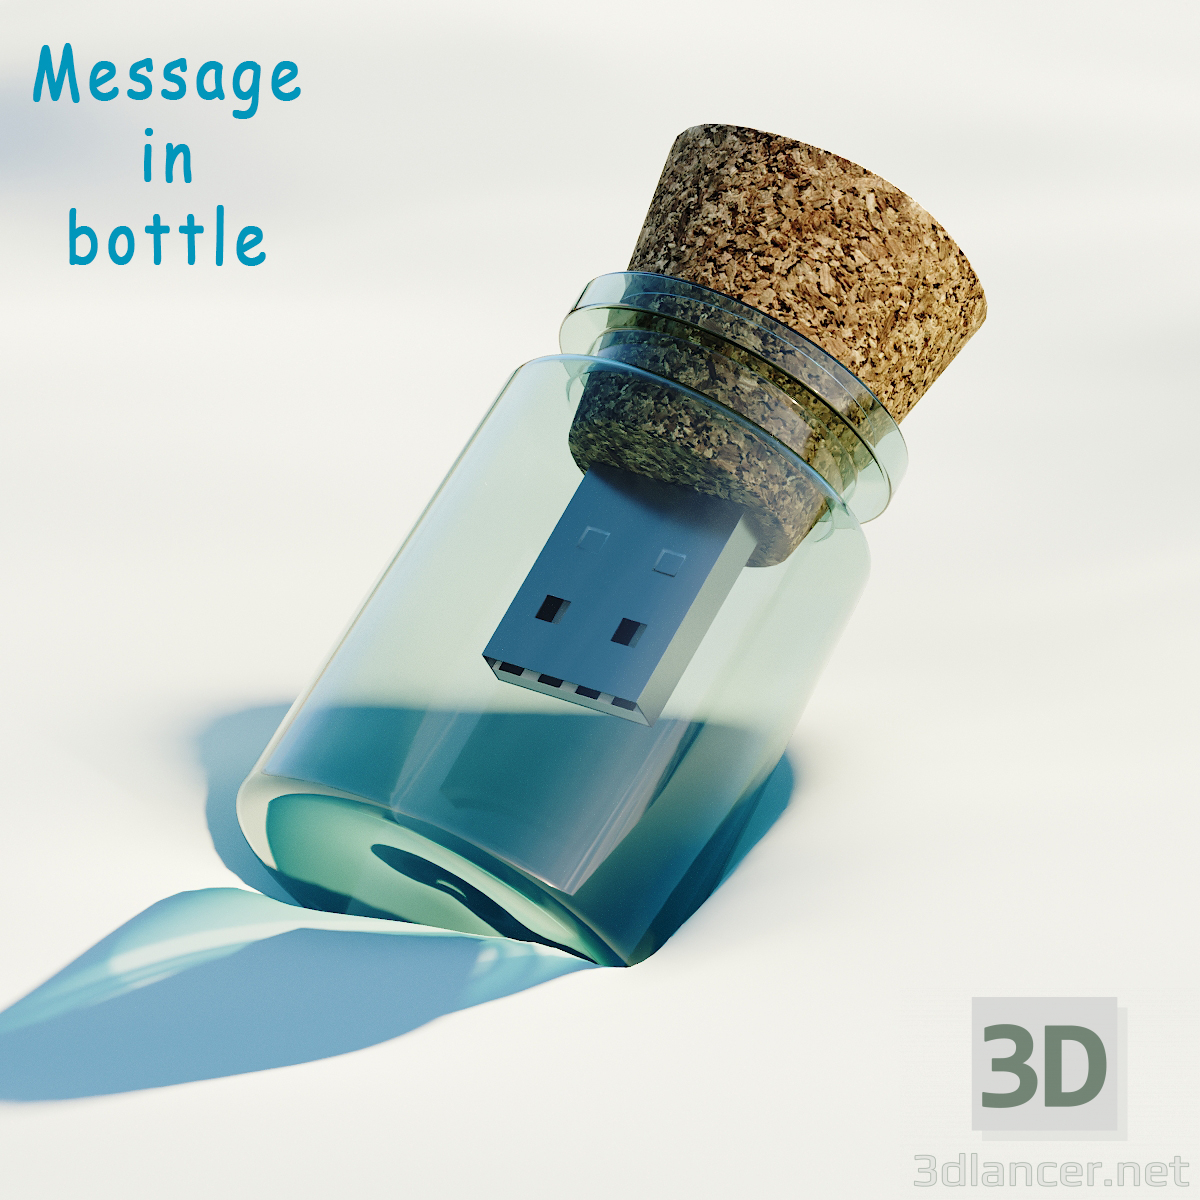 modello 3D Flash Drive - Messaggio in bottiglia - anteprima